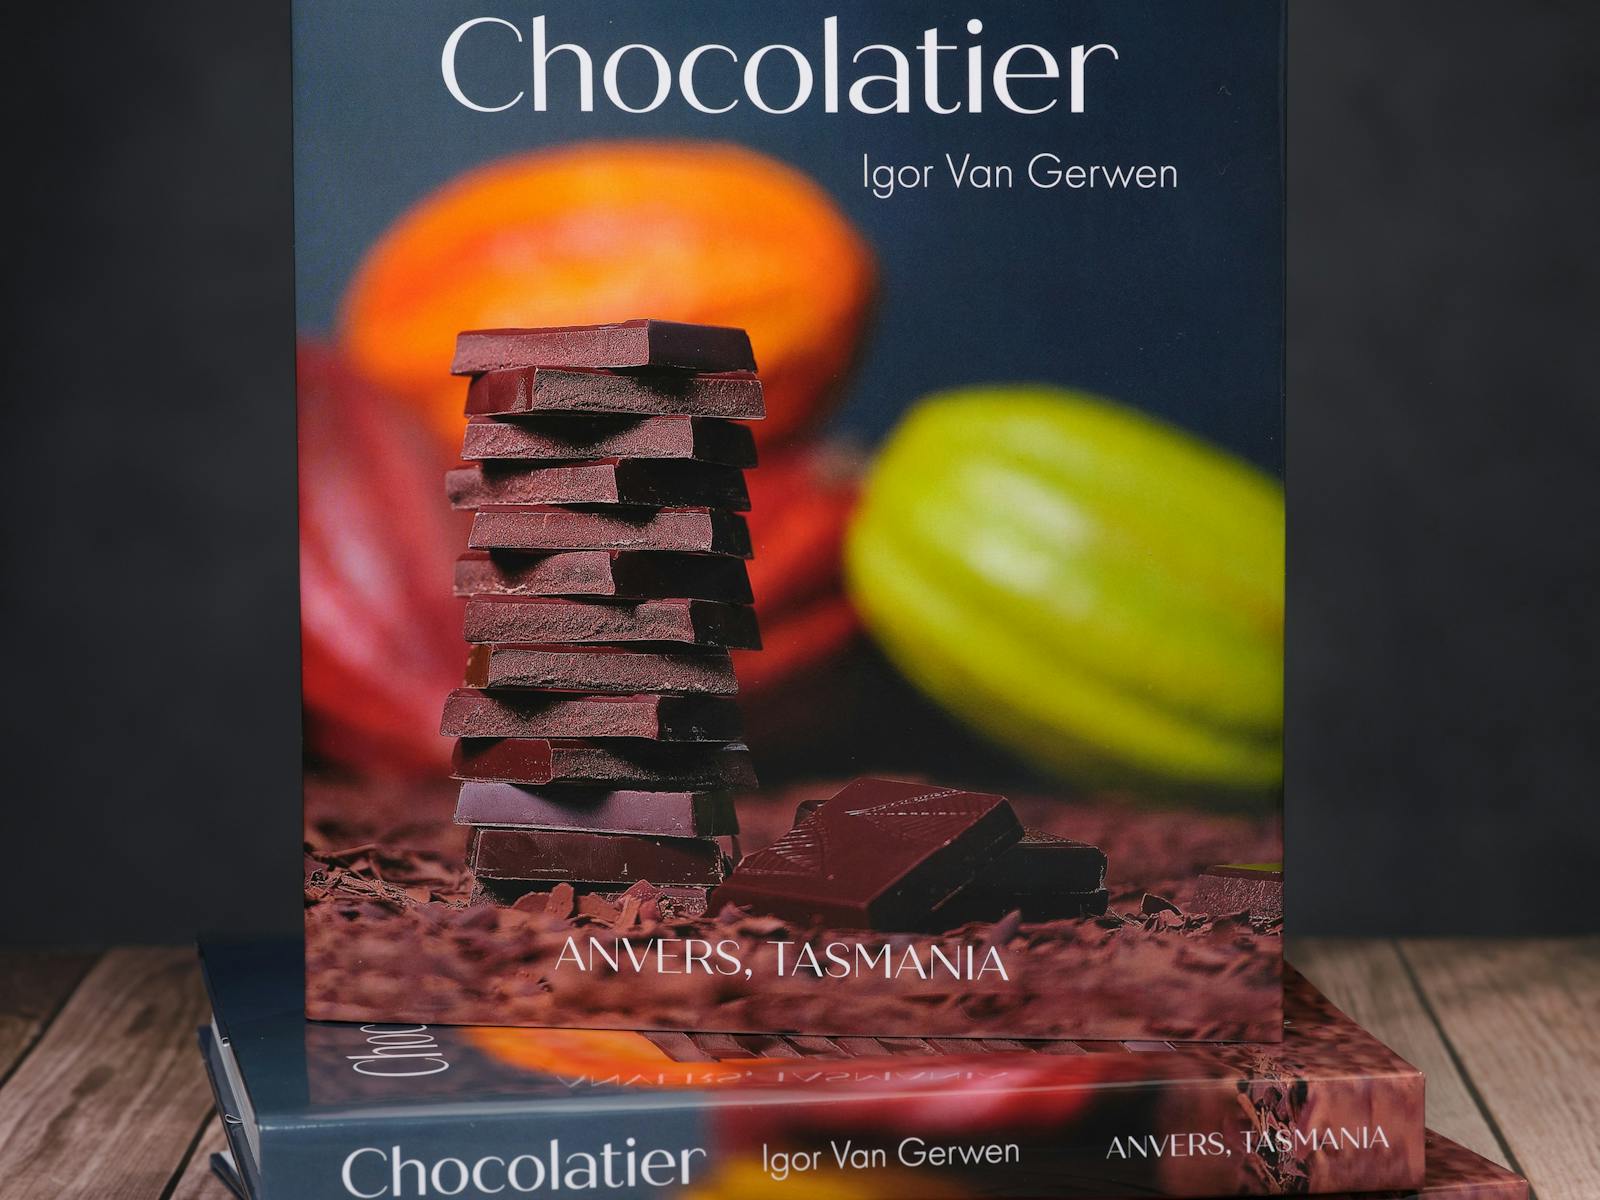 Chocolatier by Igor Van Gerwen